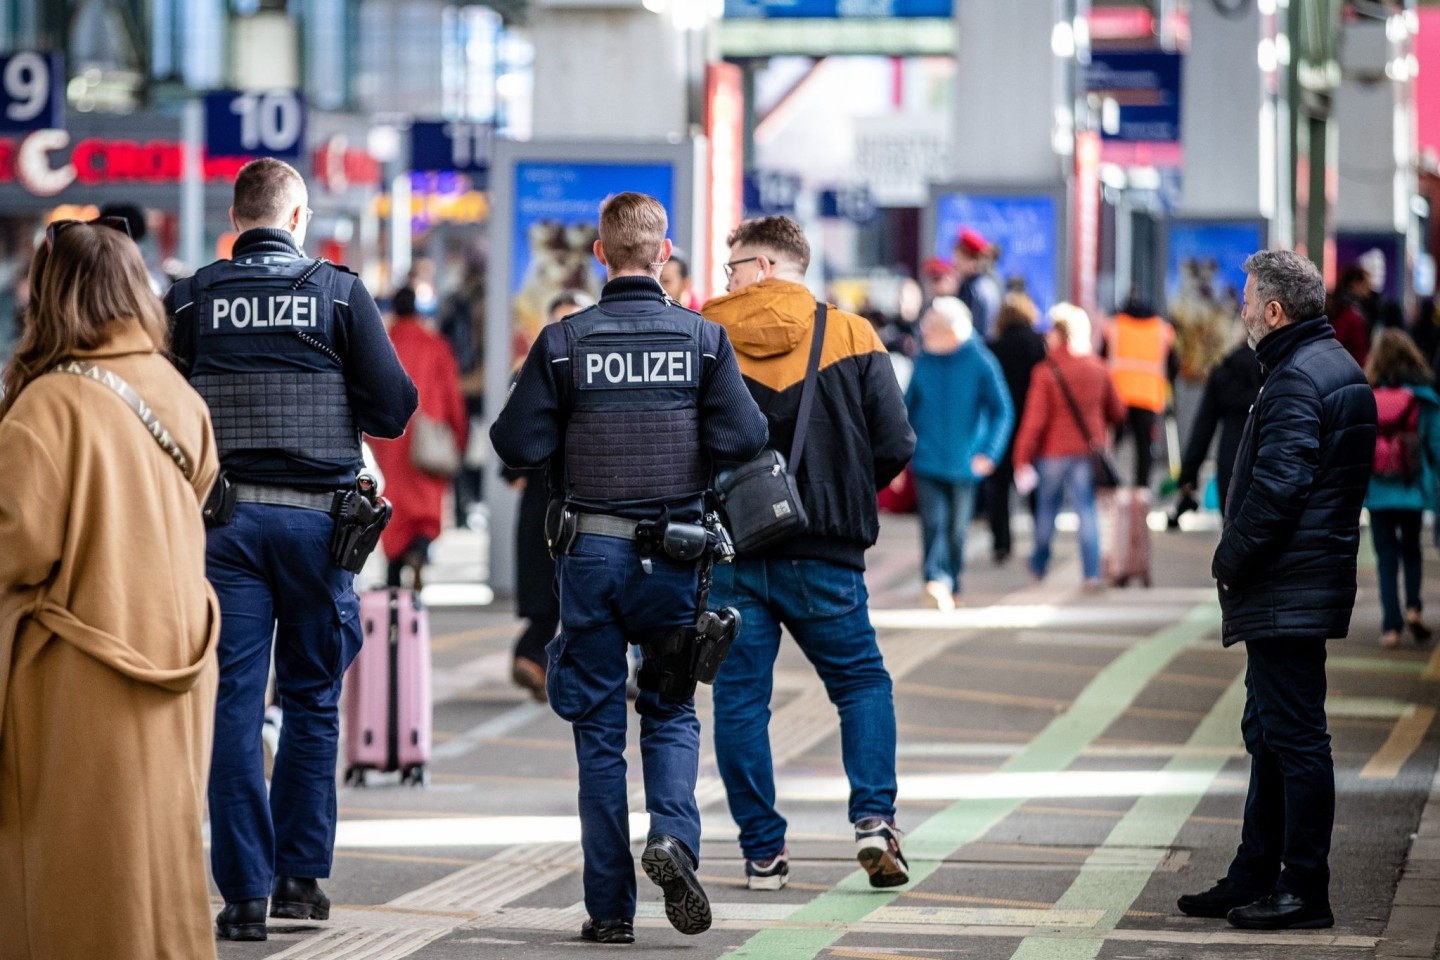 Der Bahnhof der baden-württembergischen Landeshauptstadt wurde von der Polizei komplett gesperrt und evakuiert. Mittlerweile ist der Hauptbahnhof wieder für Fahrgäste zugänglich.